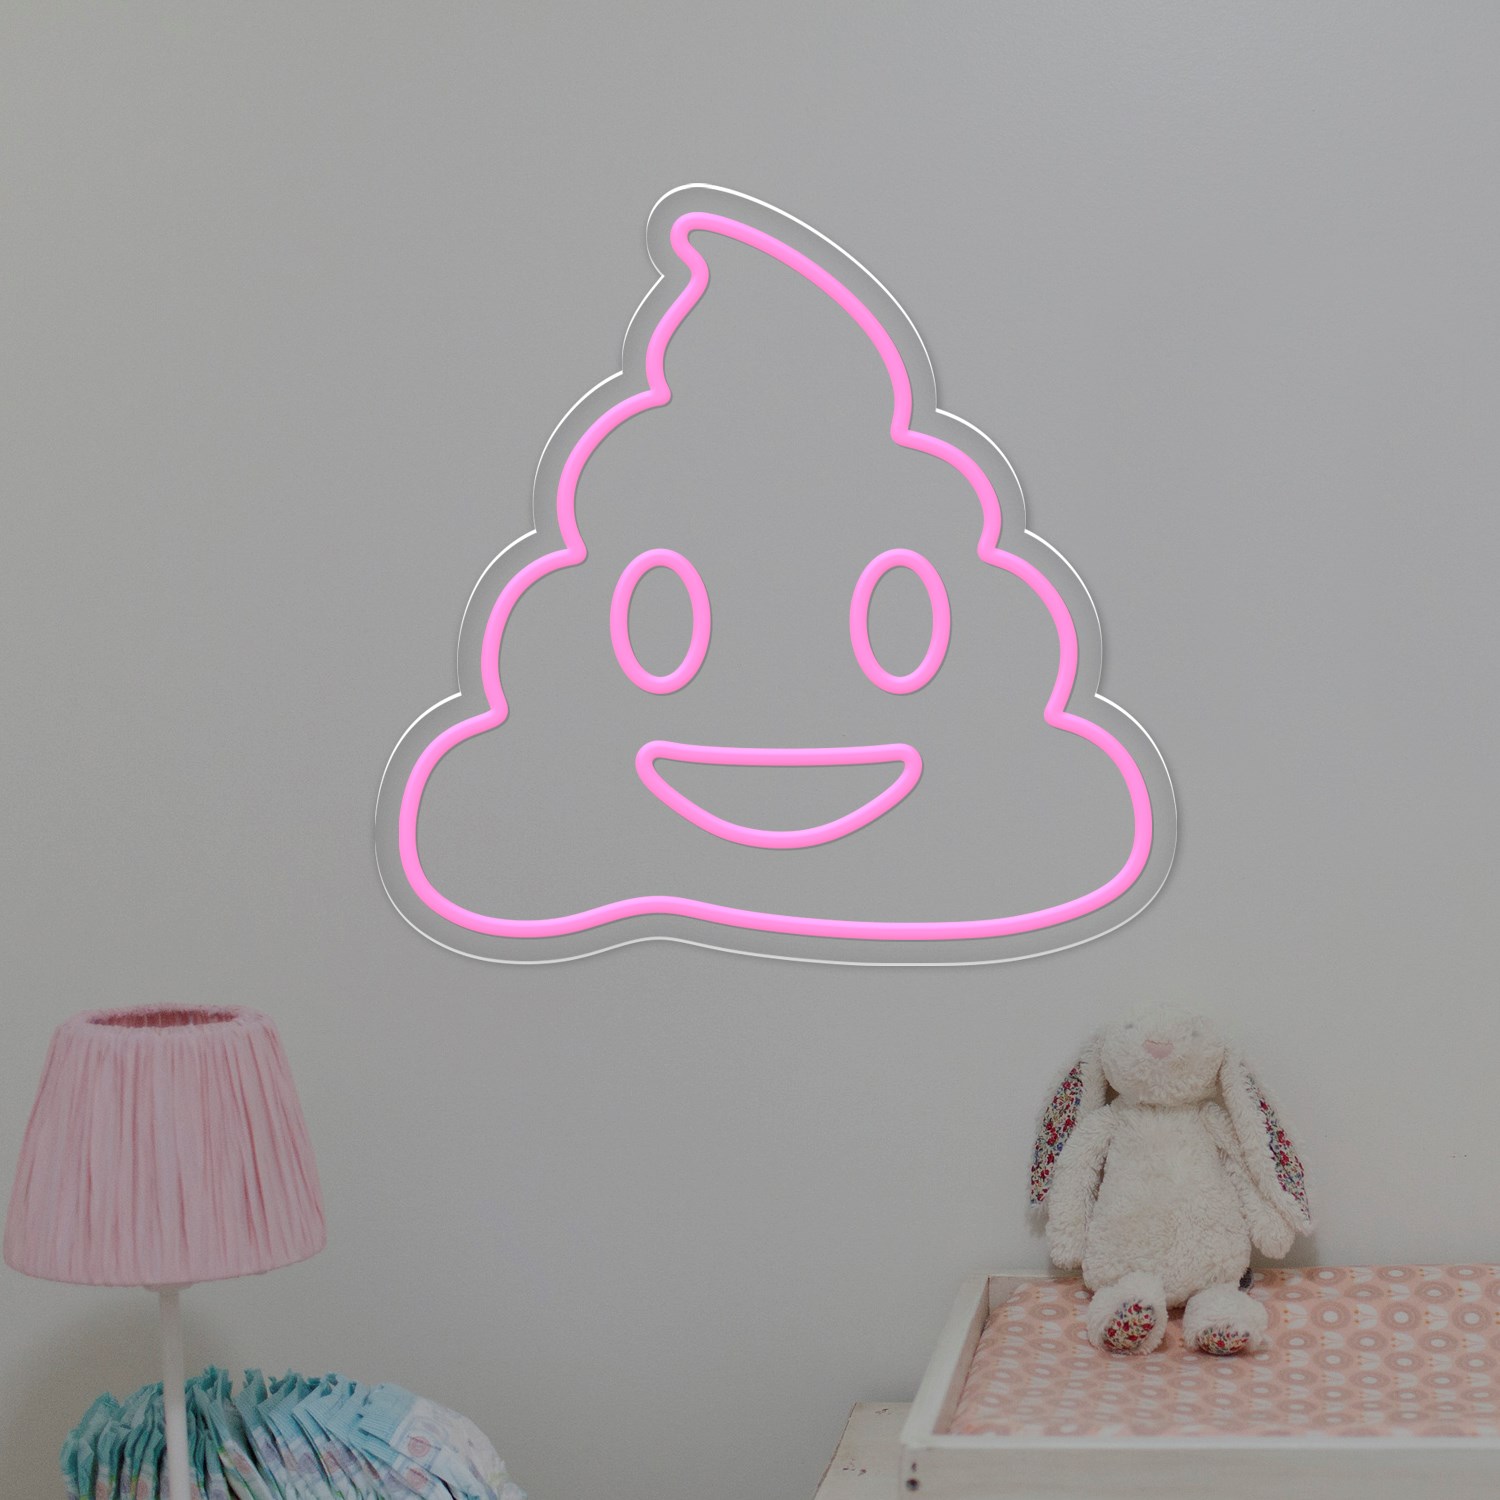 Immagine di Neon economico Cacchina Emoji